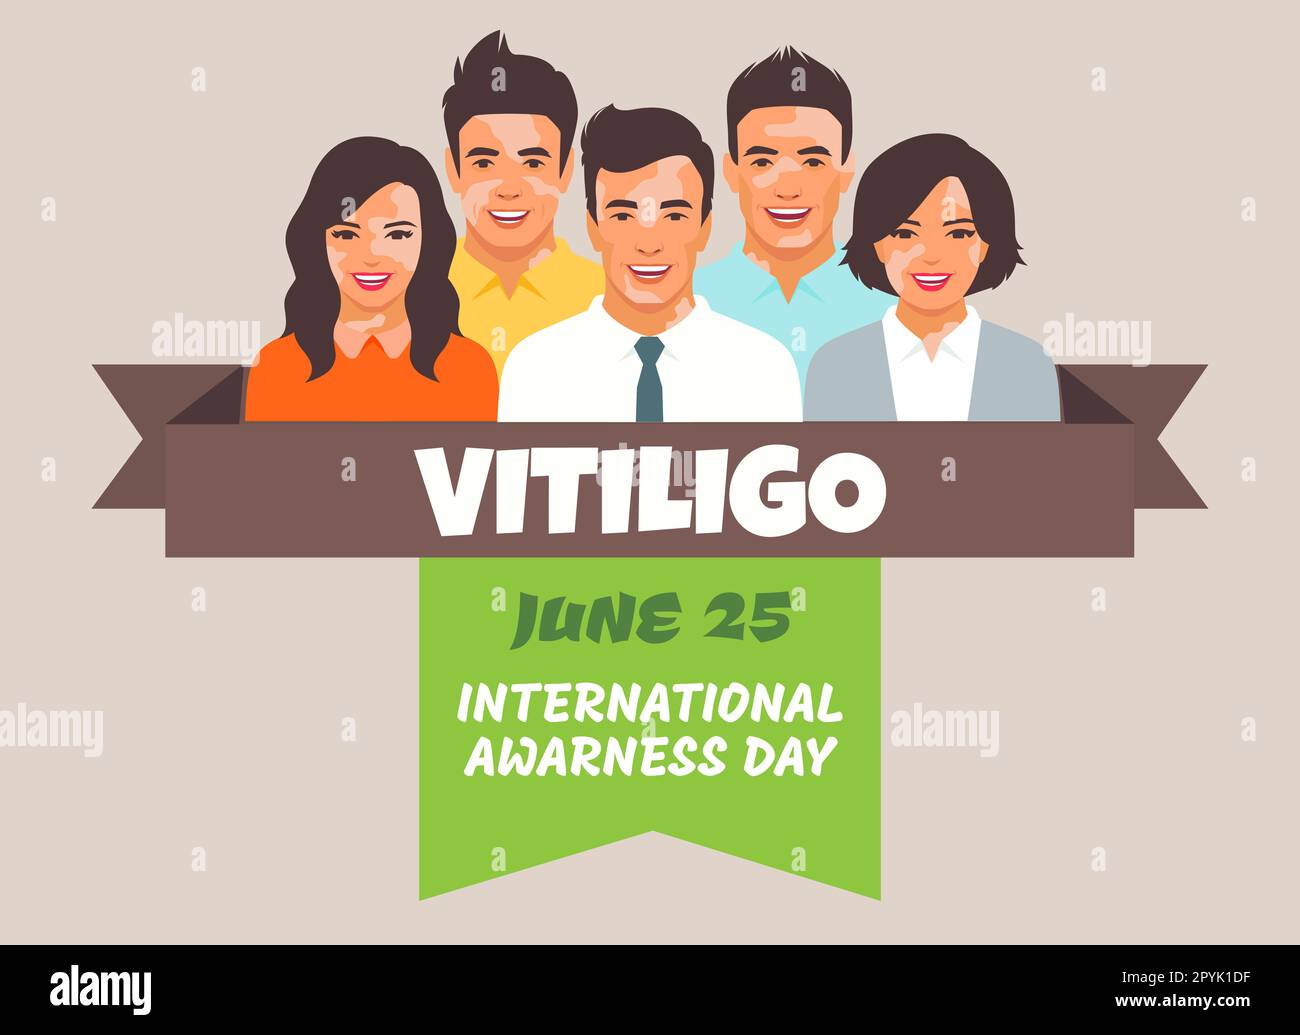 Vitiligo-Menschen isoliert. Abbildung: Flaches Vektormaterial. Das Konzept der anderen Schönheit, körperpositiv, Selbstakzeptanz. Männer, Frauen, Vitiligo-Haut Stockfoto